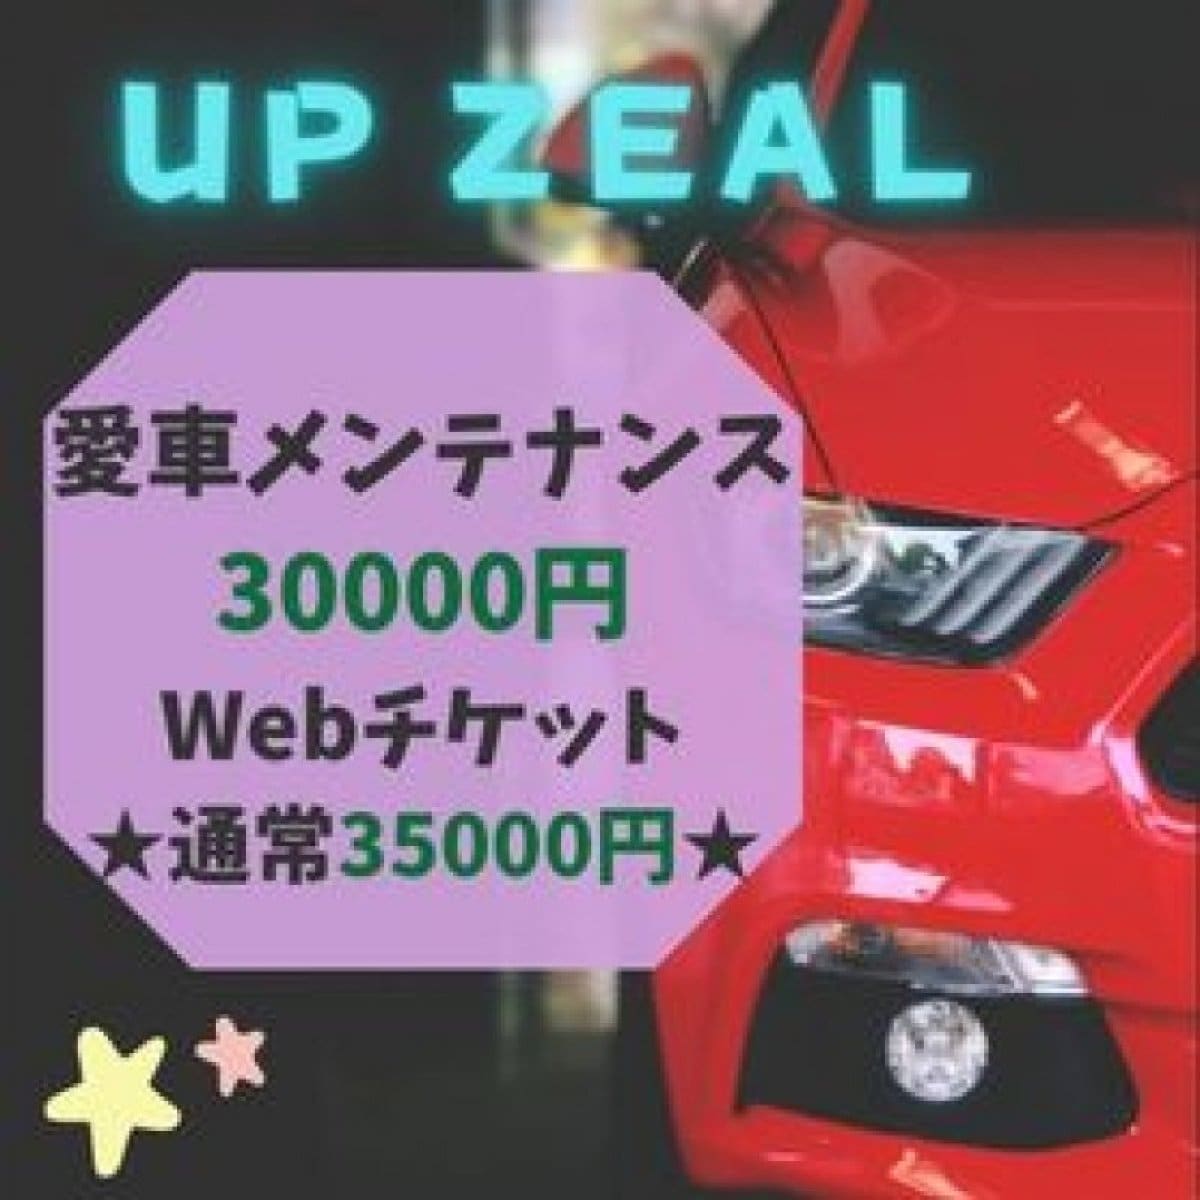 愛車メンテナンス30,000円(35,000円相当)お得なUP ZEALウェブチケット